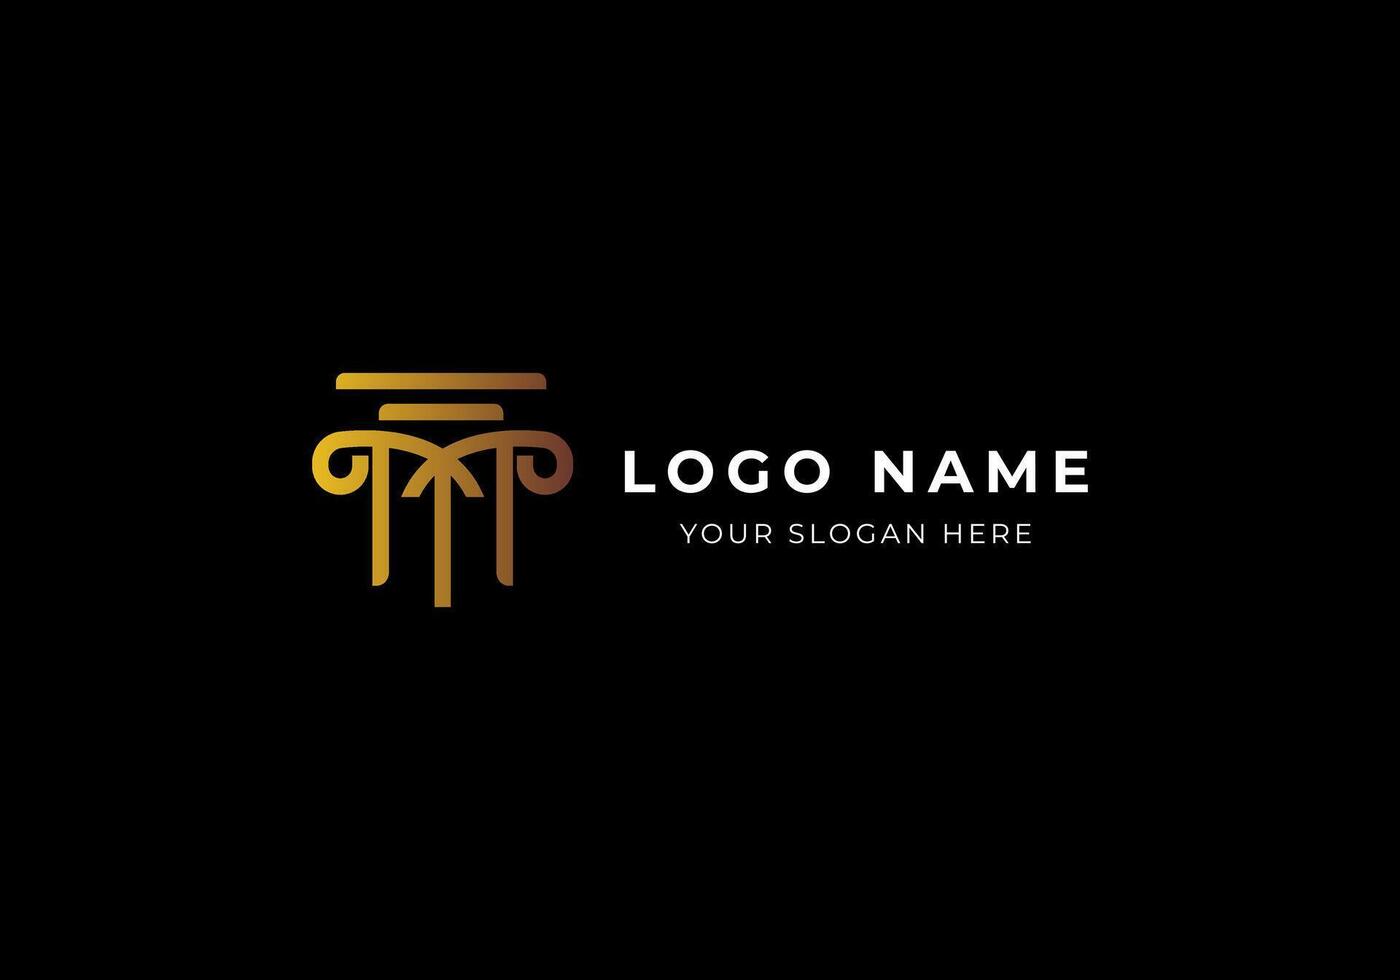 logo m pilier loi avocat Justice or, moderne luxe et minimalsit logo conception. modifiable fichier vecteur